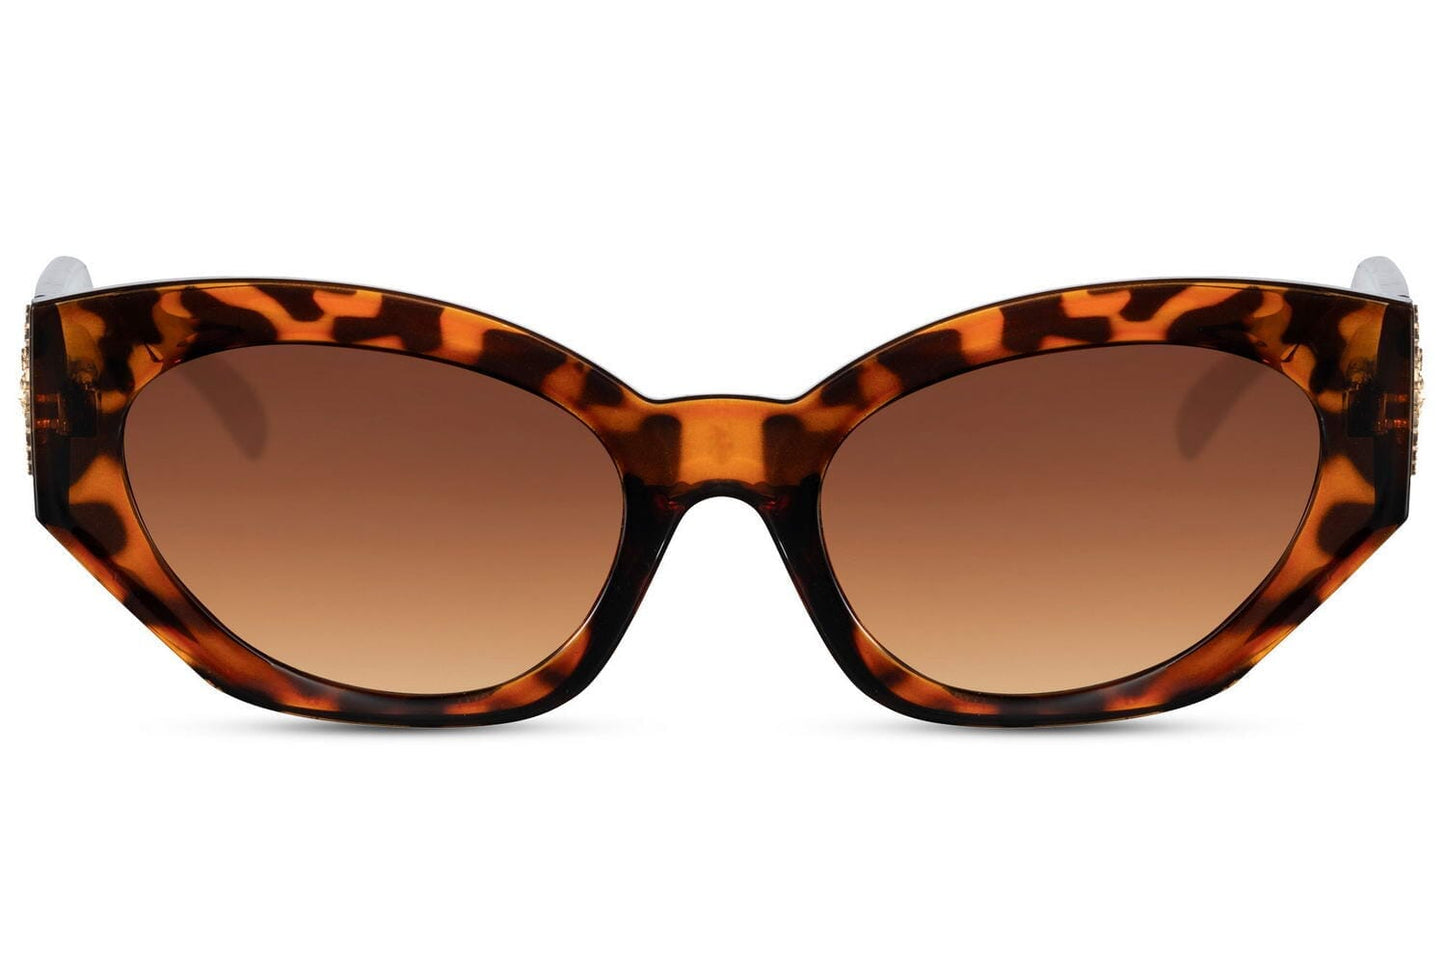 Oval cat eye sunglasses. UV400 protected. Acetate frames. Brown lenses.